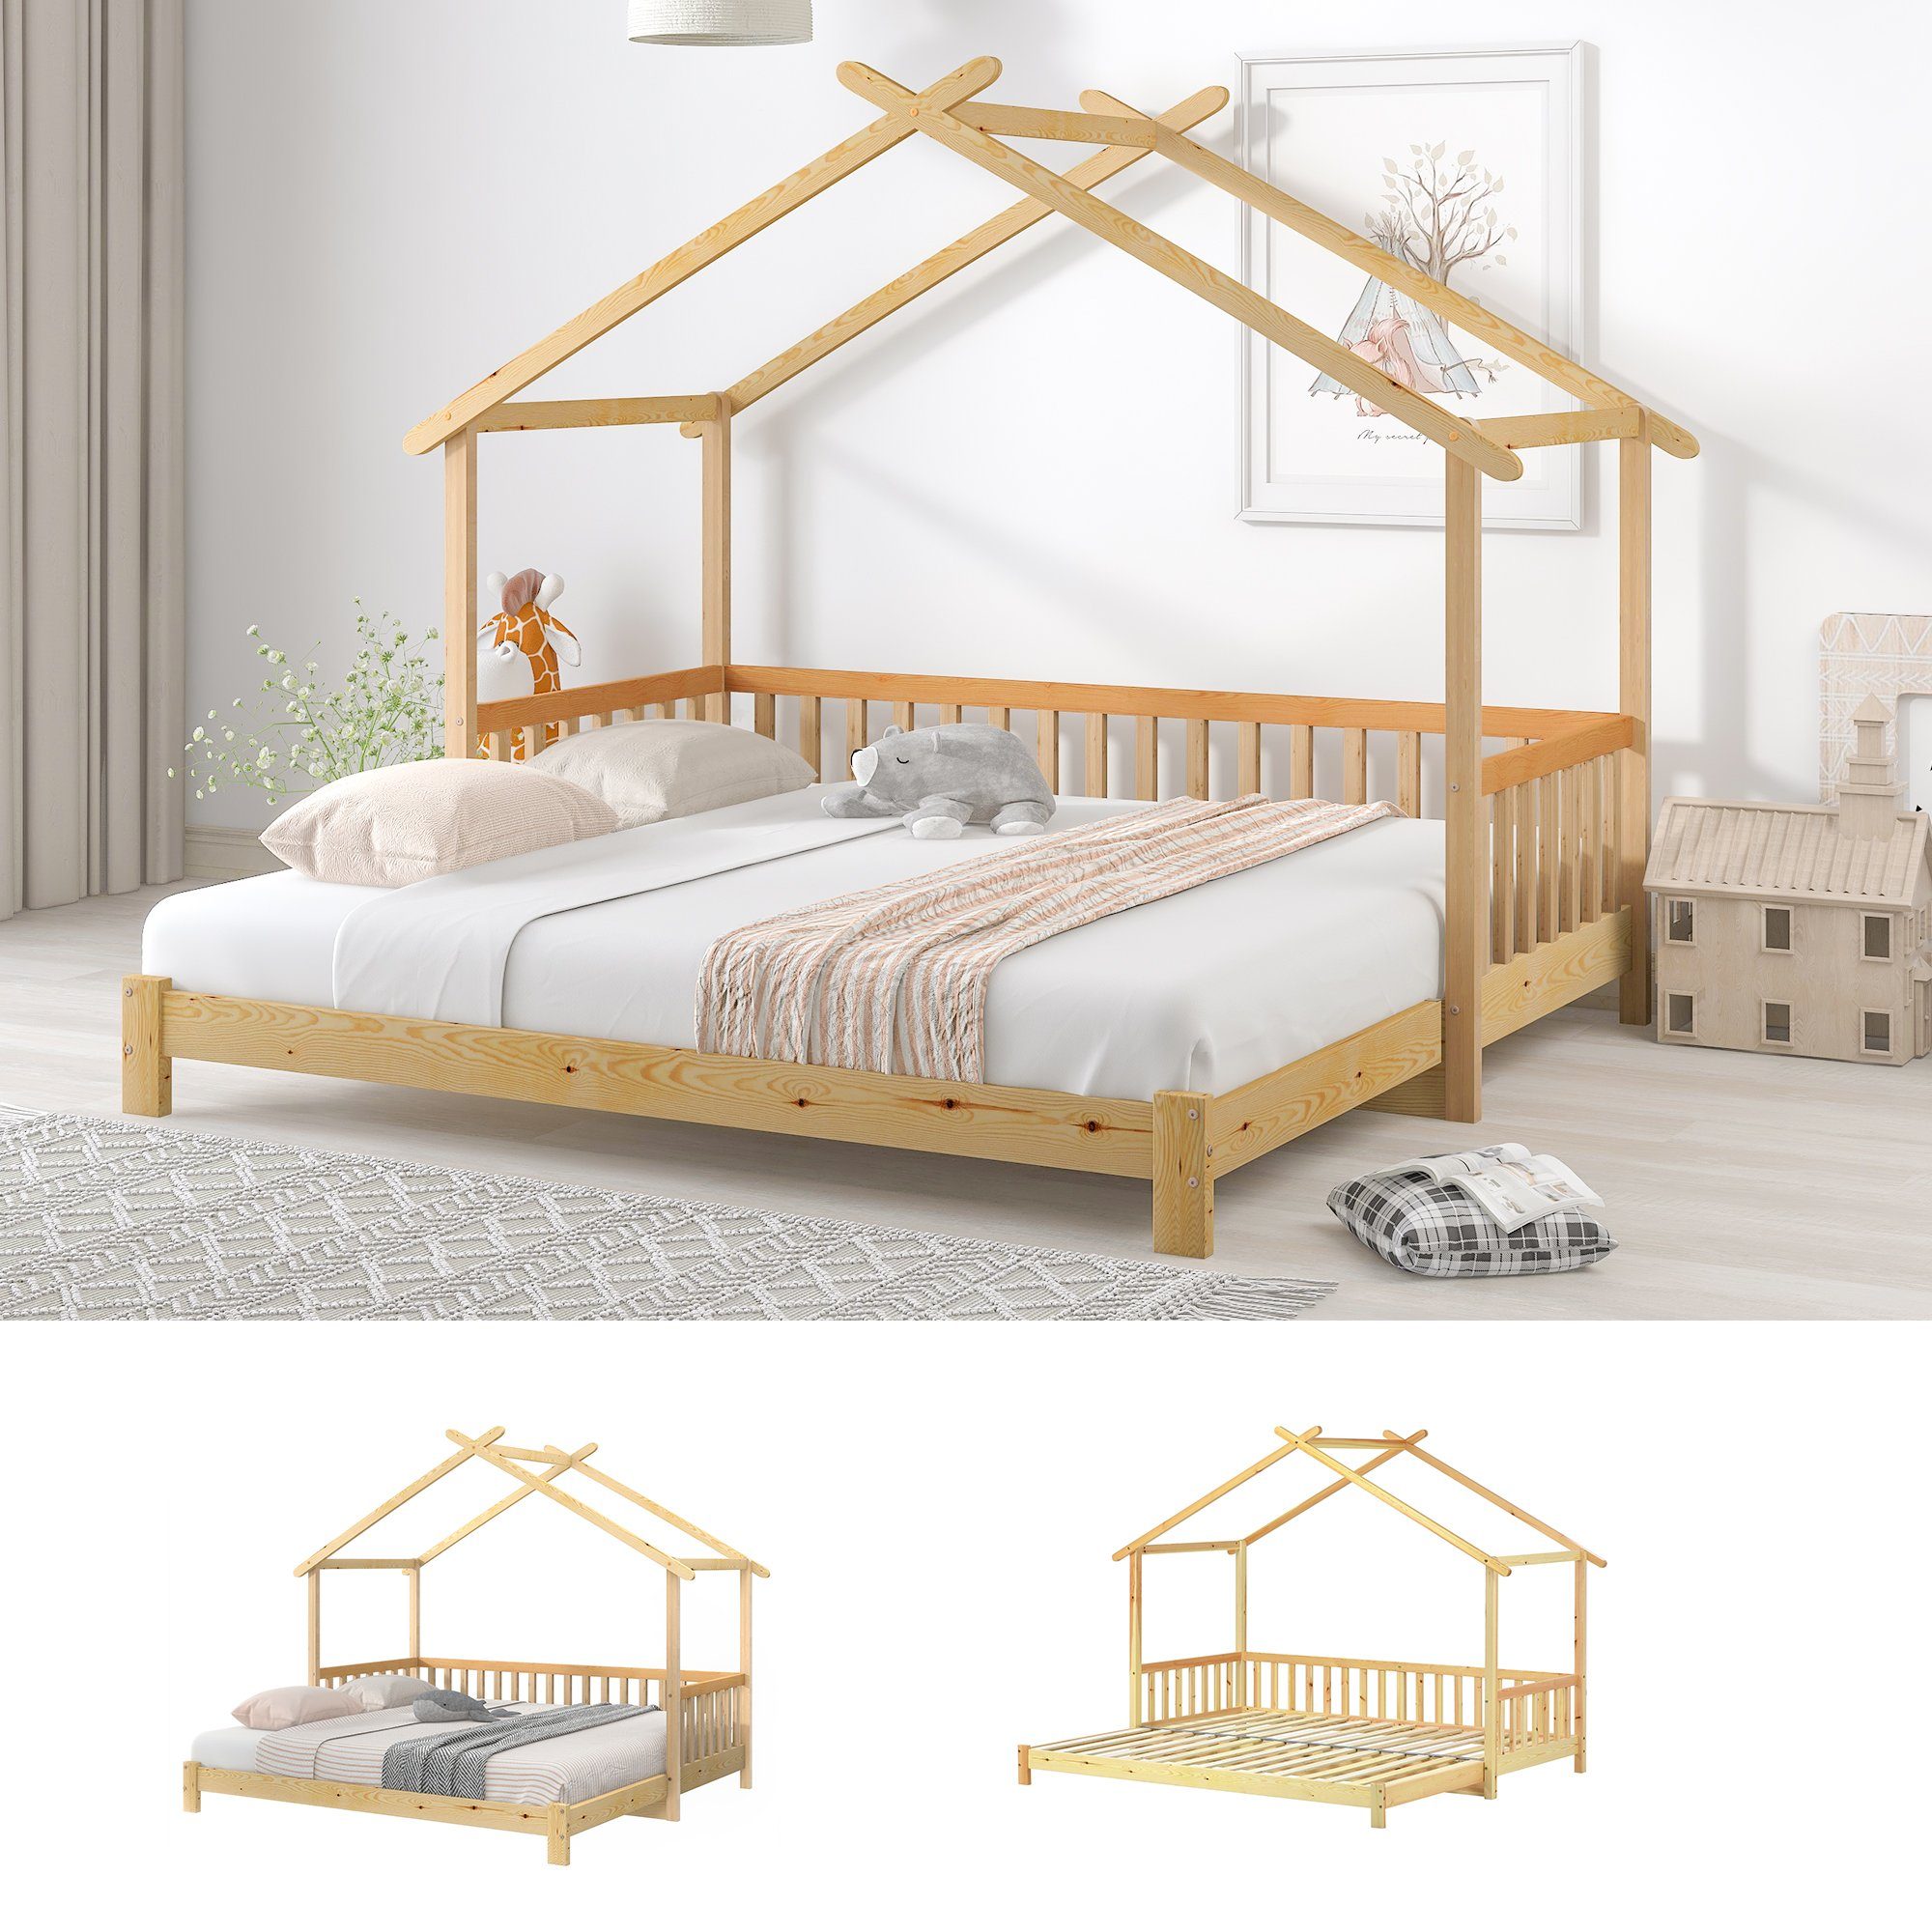 HAUSS SPLOE Bett Hausbett Kinderbett Matratze Ohne Baumhausbett keine enthält Matratze), Holzbett Bett Bettrahmen Erweiterbares (Das